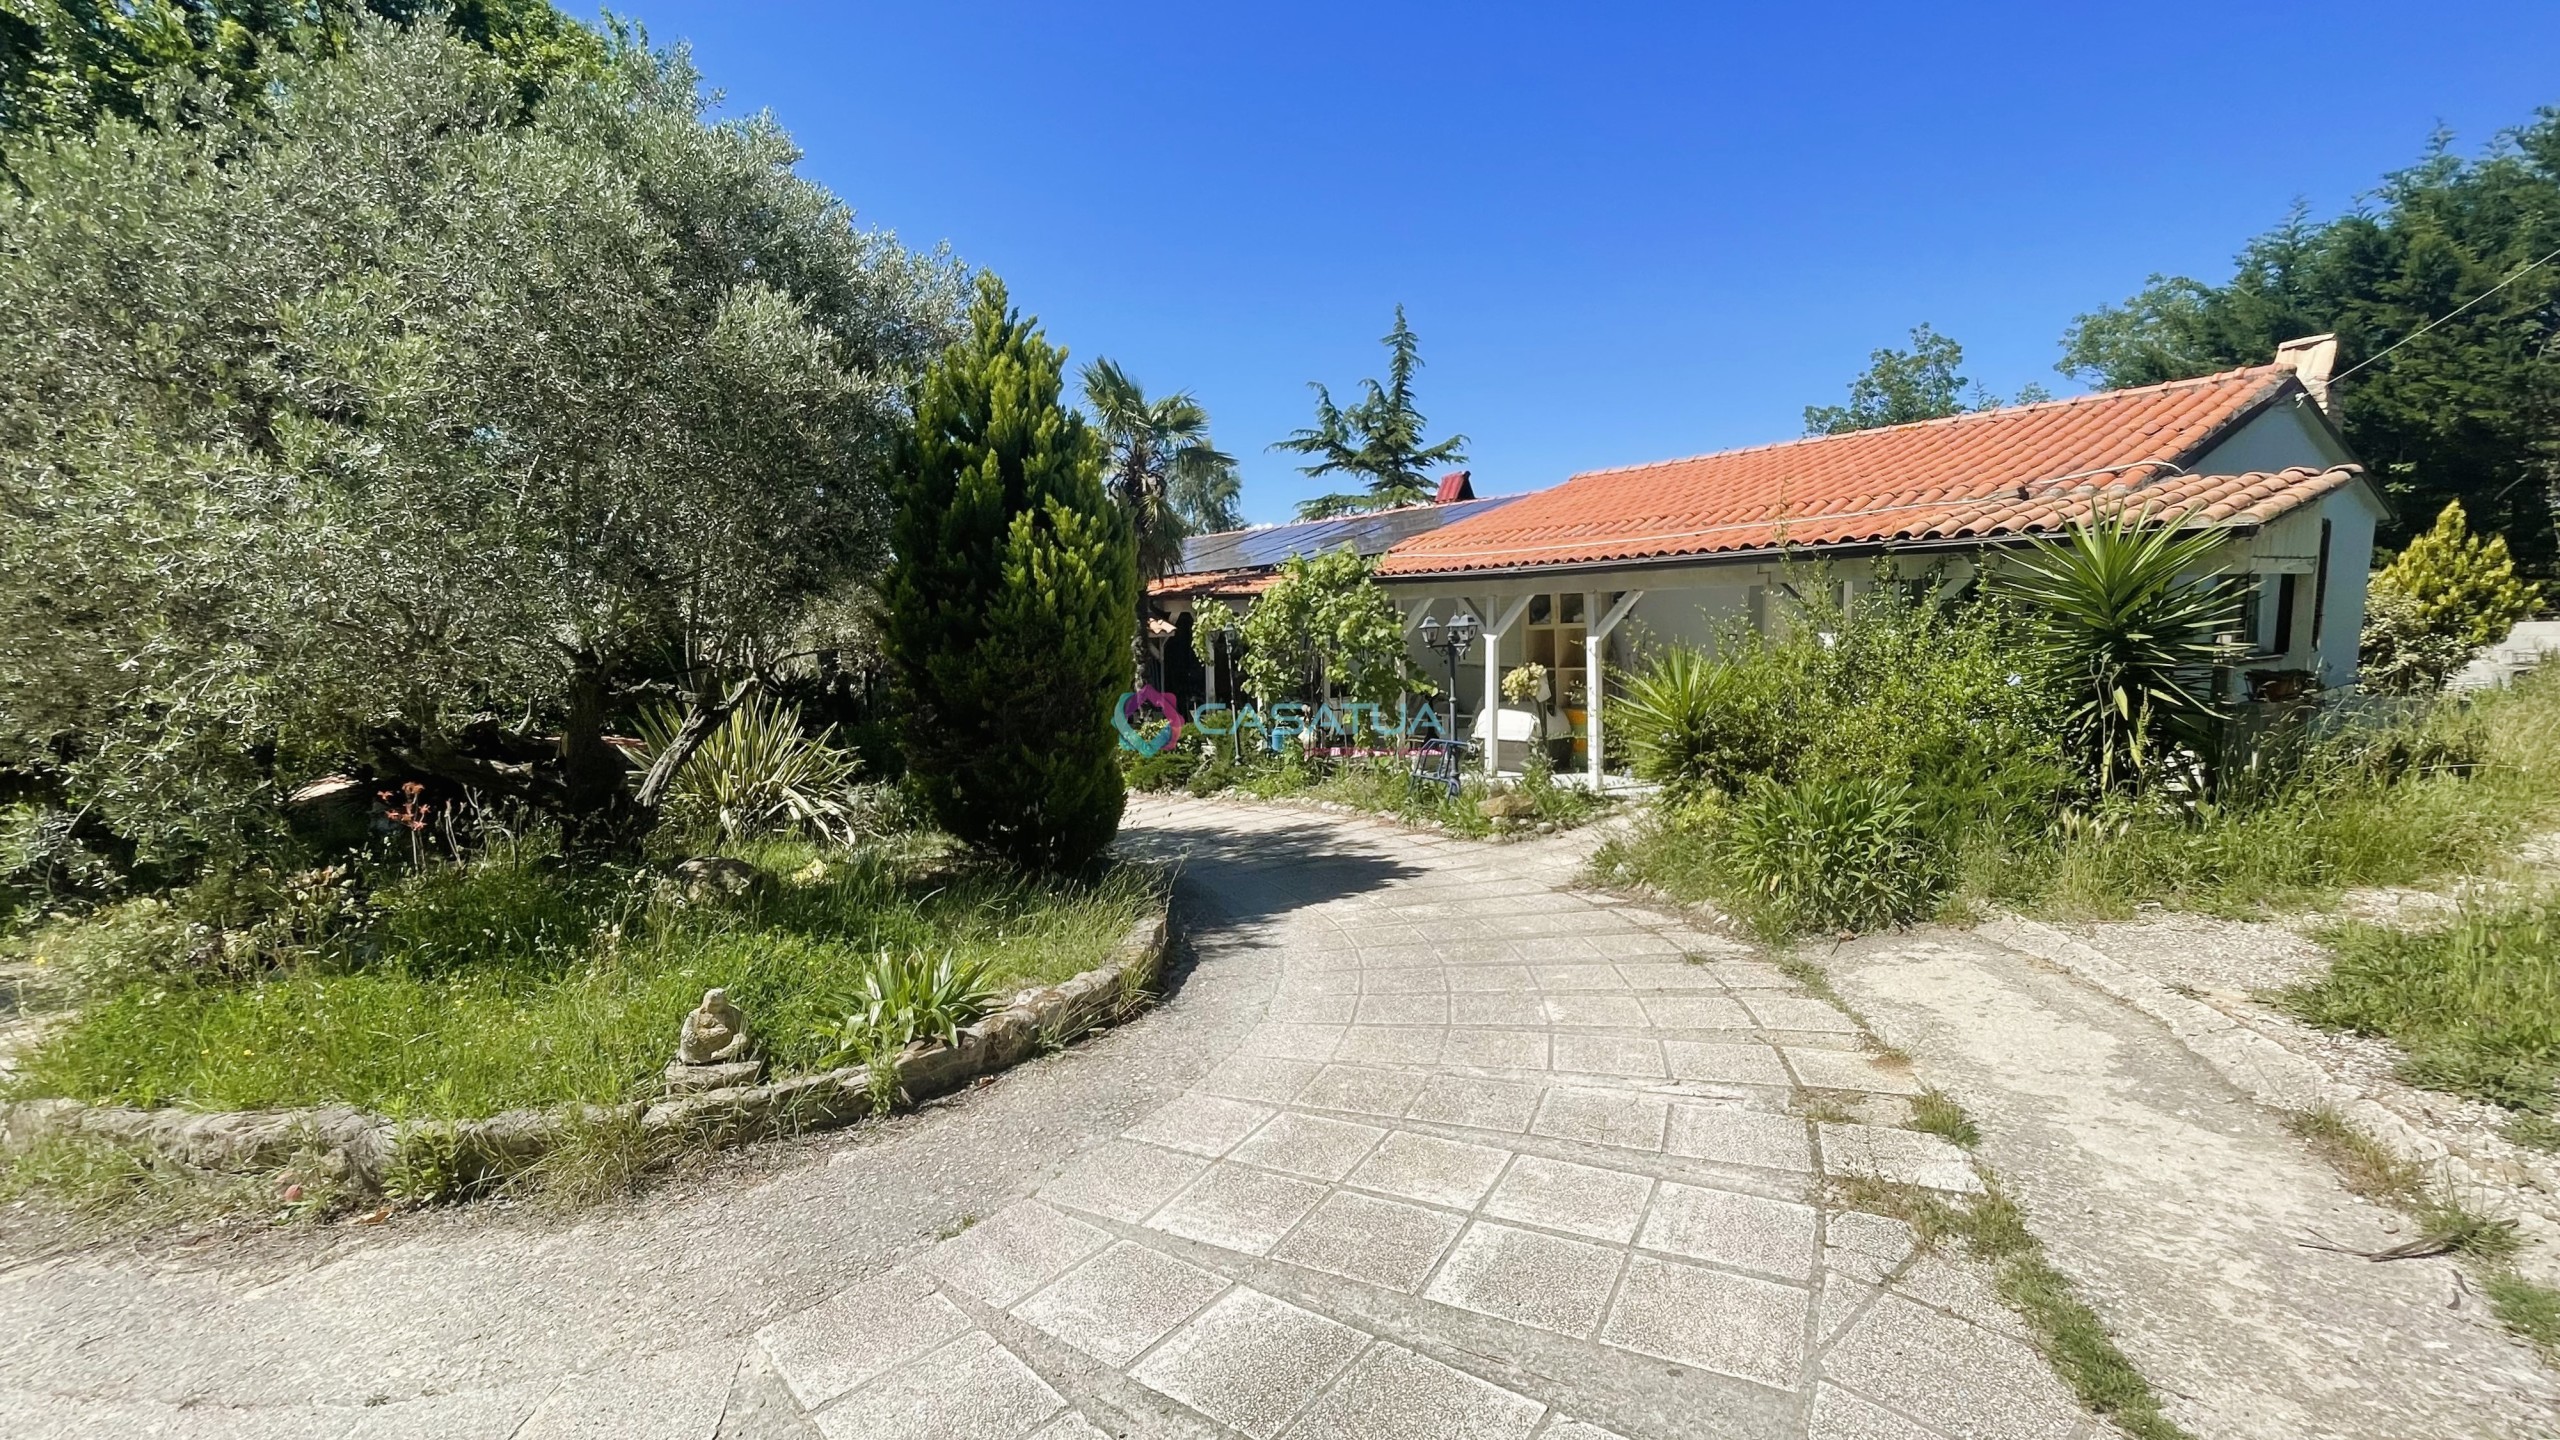 Villa con giardino in contrada cretone 9, Pineto